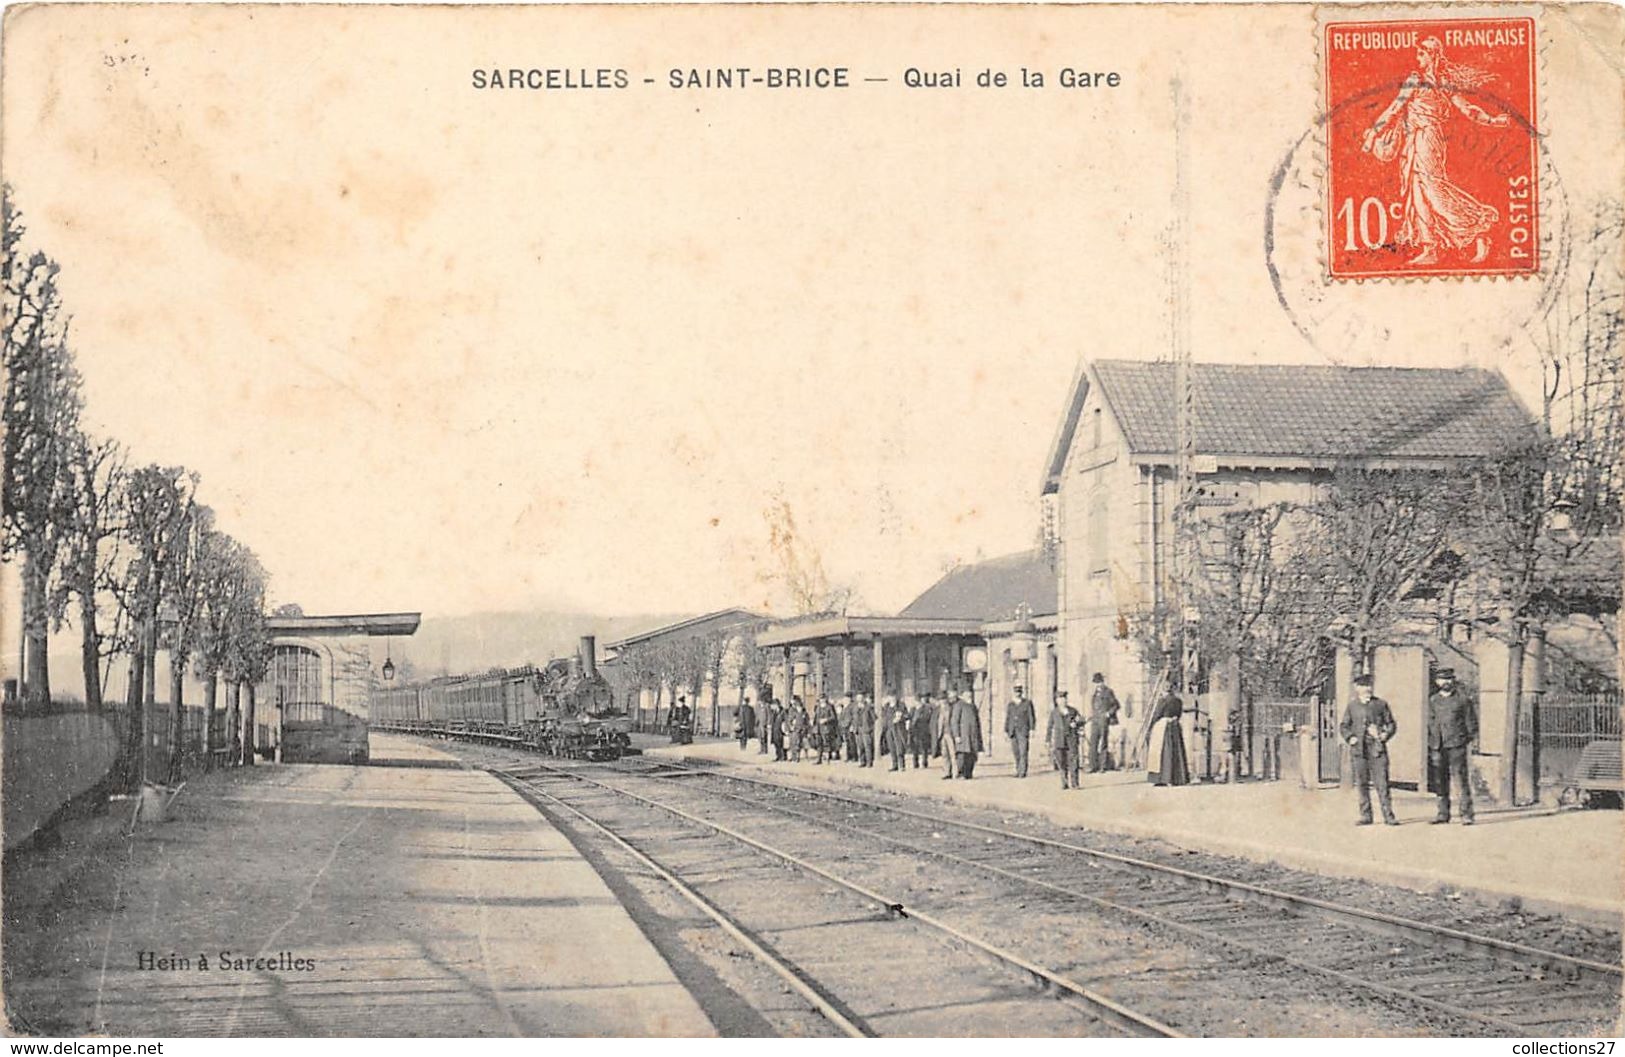 95-SAINT-BRICE- SARCELLES- QUAI DE LA GARE - Saint-Brice-sous-Forêt